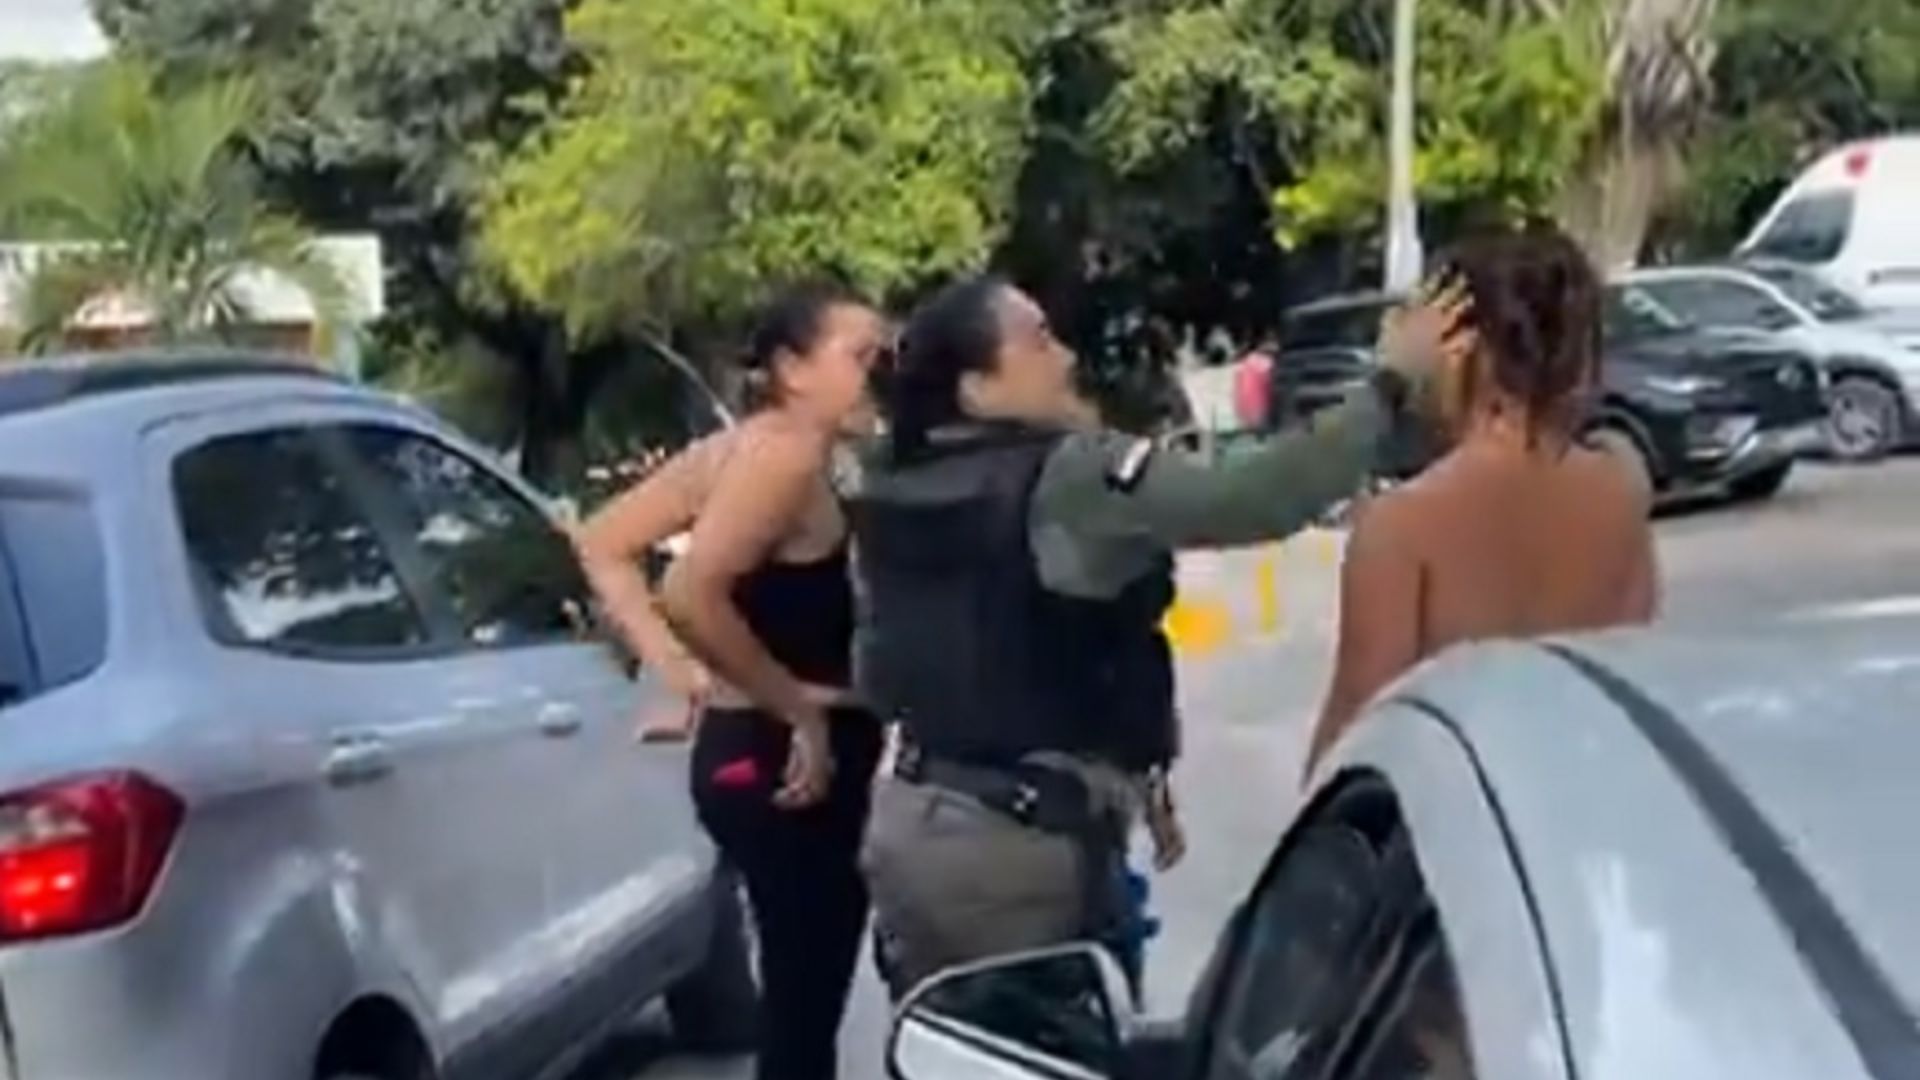 Policial filmada dando tapa em mãe tem conduta investigada pela PM.